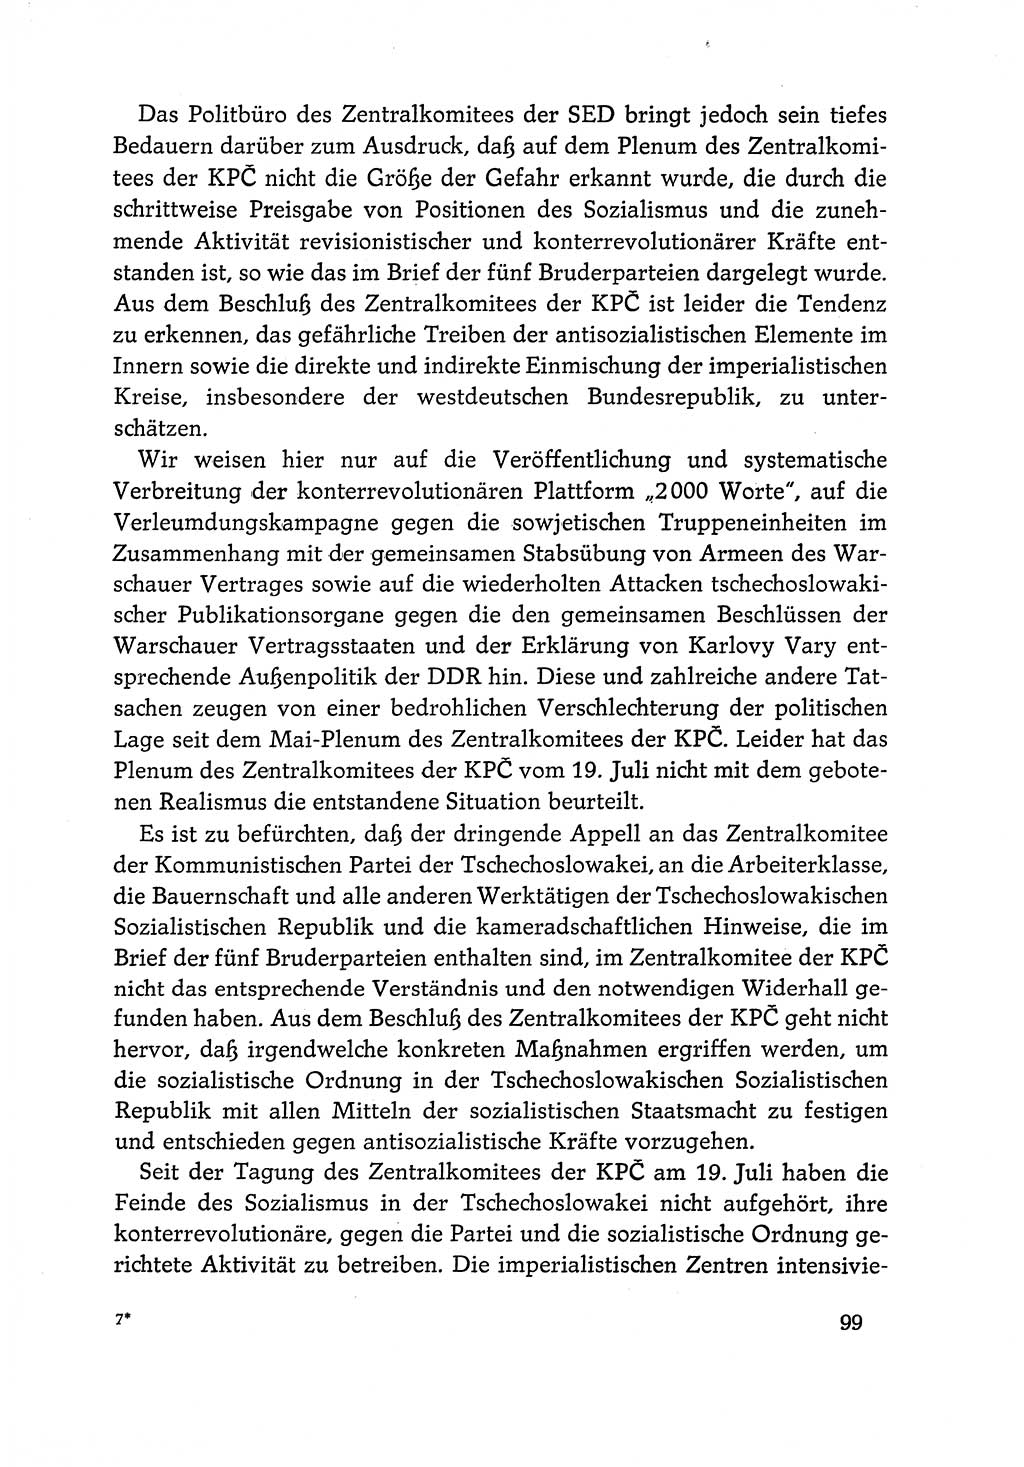 Dokumente der Sozialistischen Einheitspartei Deutschlands (SED) [Deutsche Demokratische Republik (DDR)] 1968-1969, Seite 99 (Dok. SED DDR 1968-1969, S. 99)